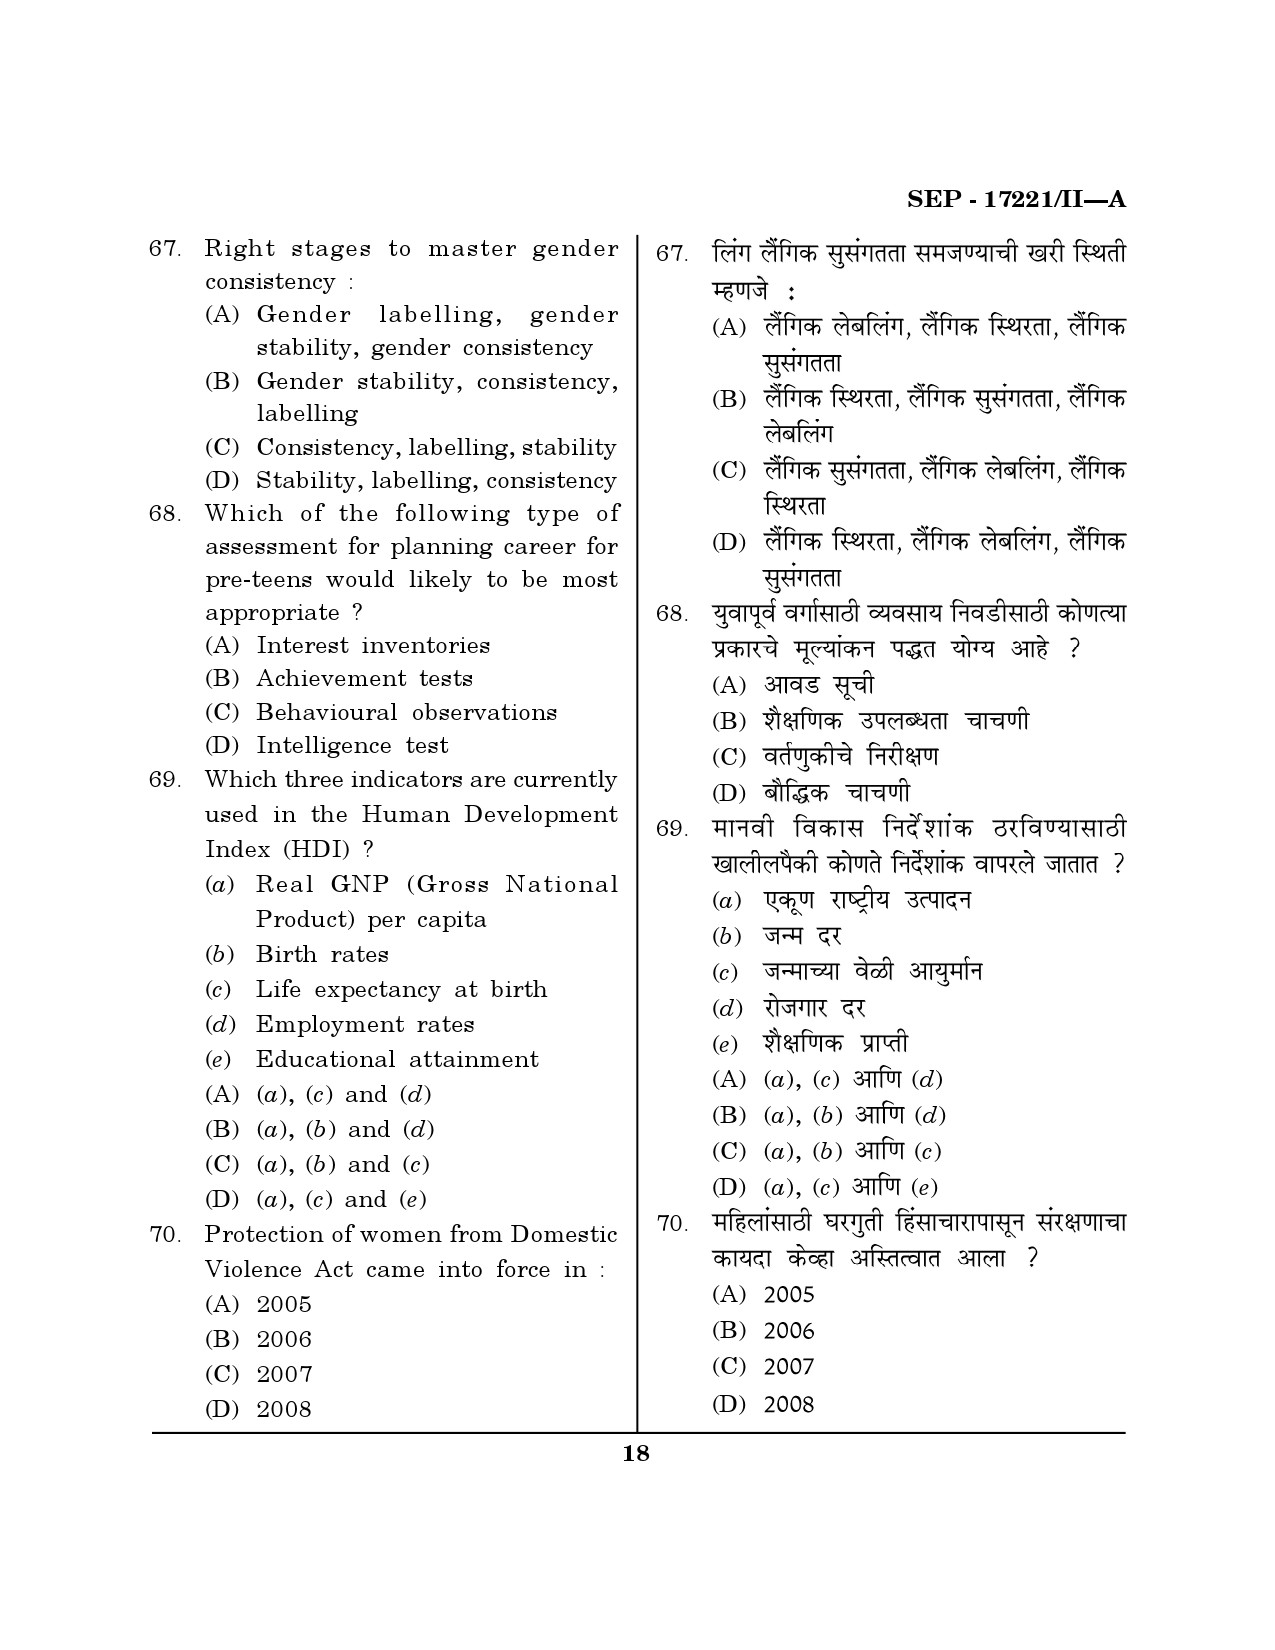 Maharashtra SET Home Science Exam Question Paper September 2021 17